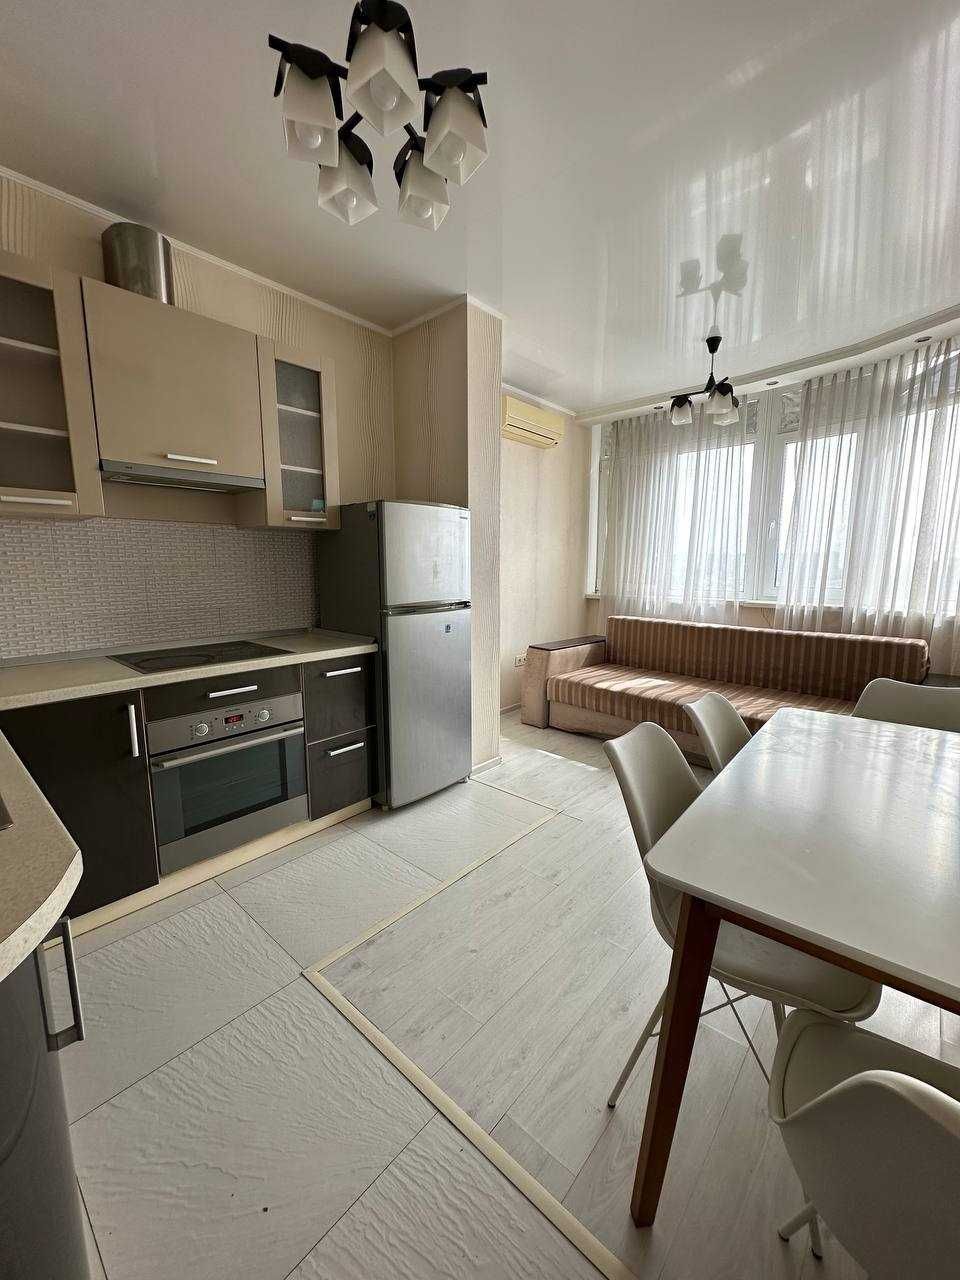 Продам 1-комнатную квартиру 50м2 с ремонтом в ЖК"Малиновский"!